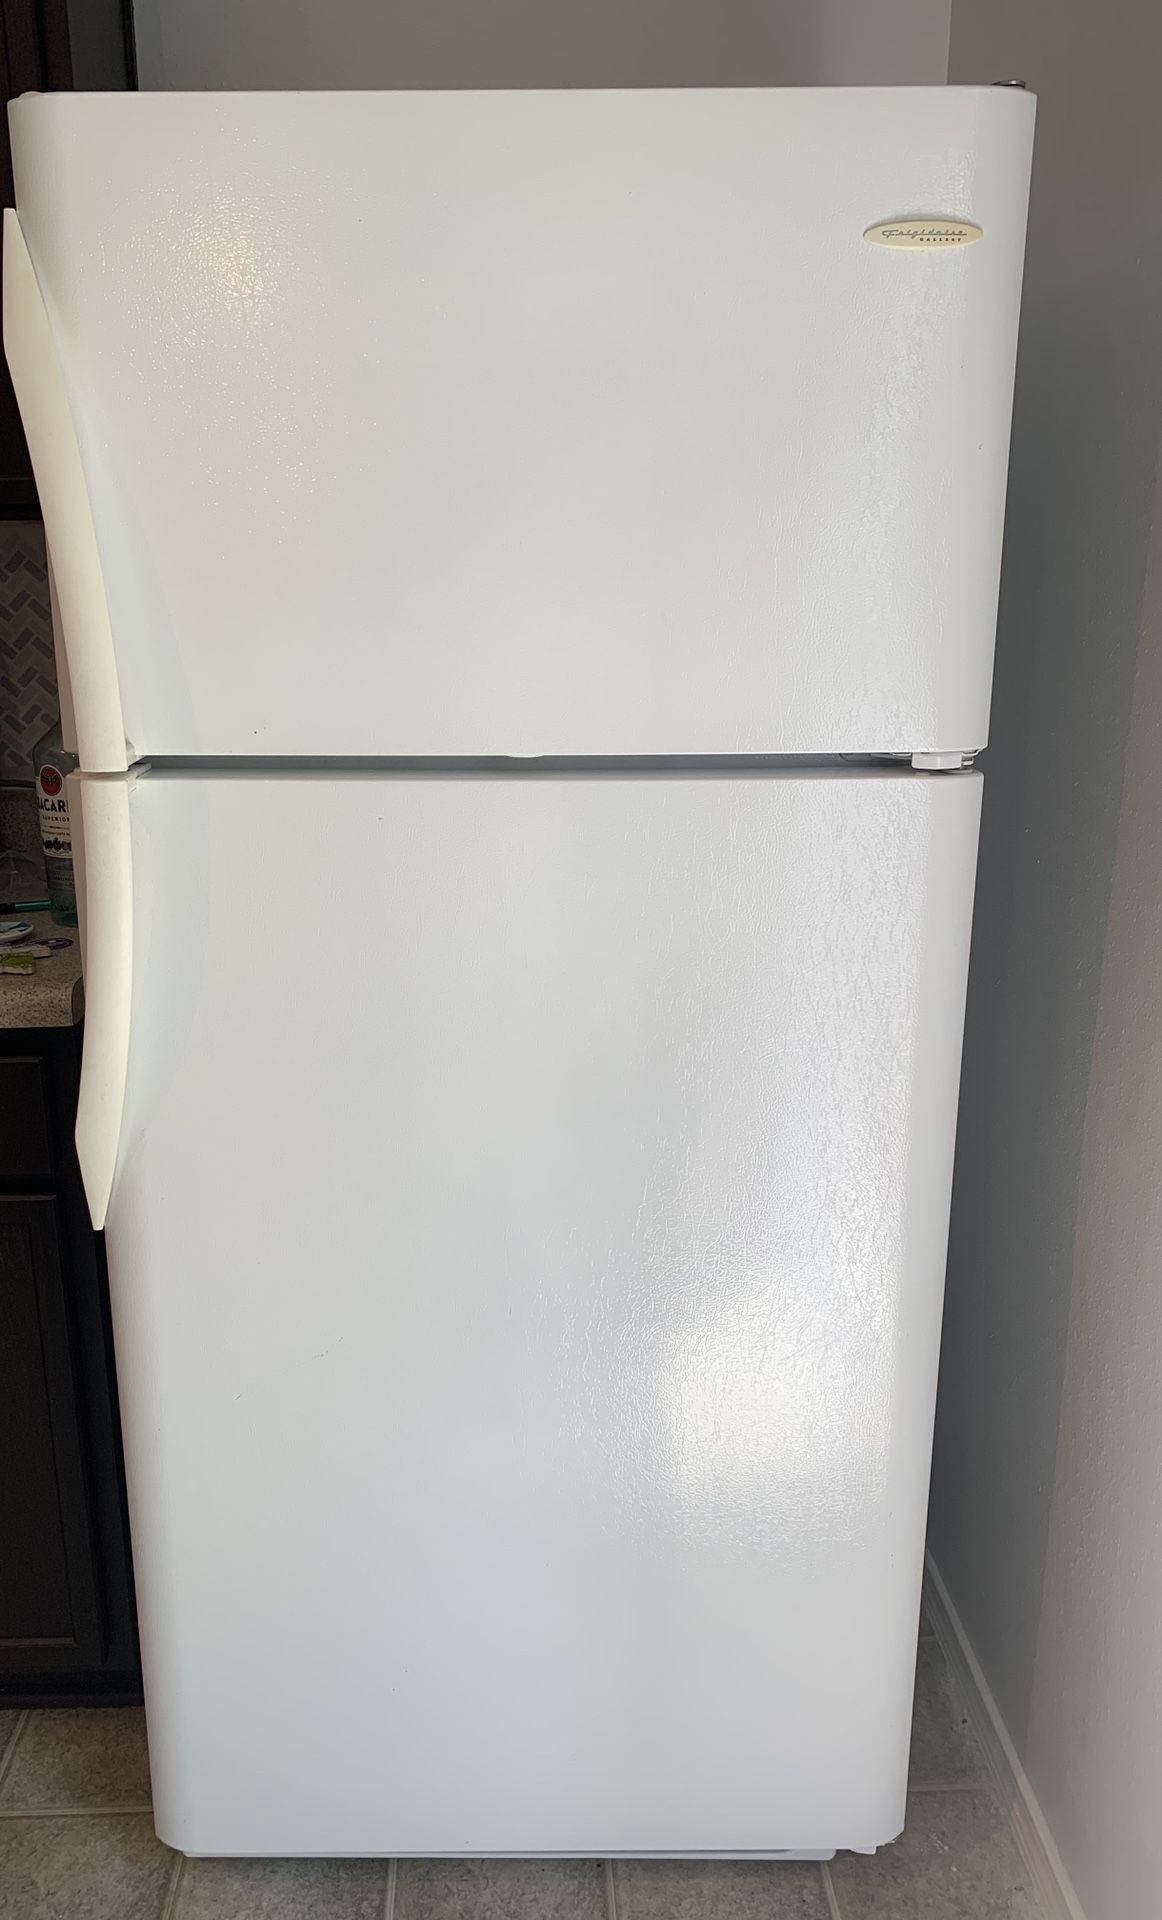 Frigidaire refrigerator for sale!